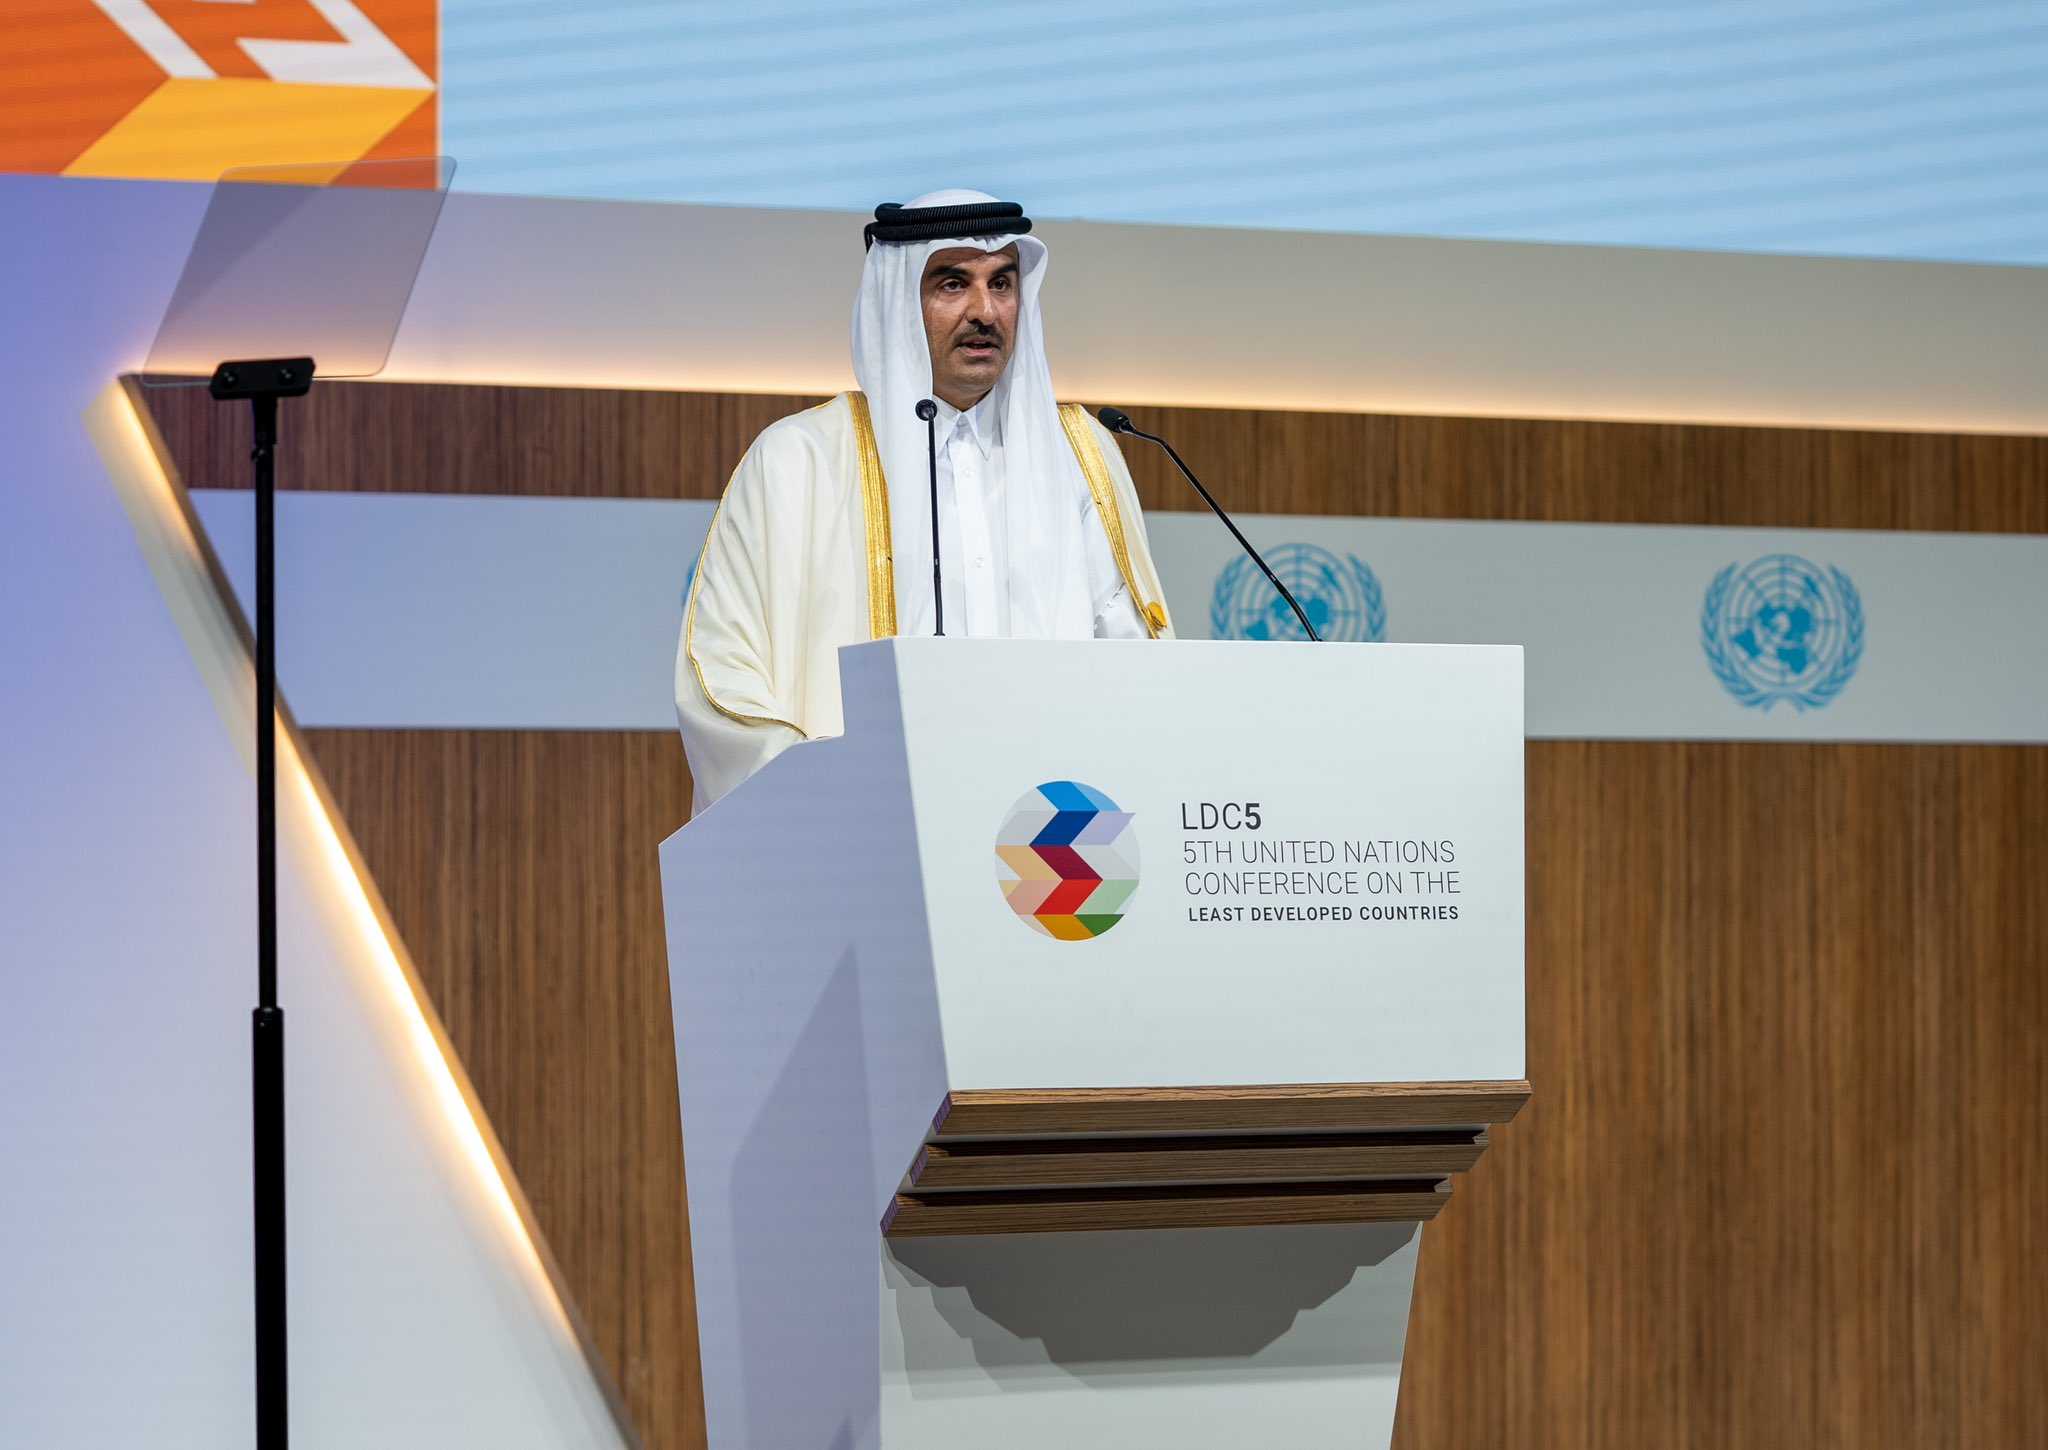 سمو الأمير المفدى يفتتح مؤتمر الأمم المتحدة الخامس المعني بأقل البلدان نموا والمنعقد تحت شعار من الإمكانات إلى الازدهار وذلك بمركز قطر الوطني للمؤتمرات